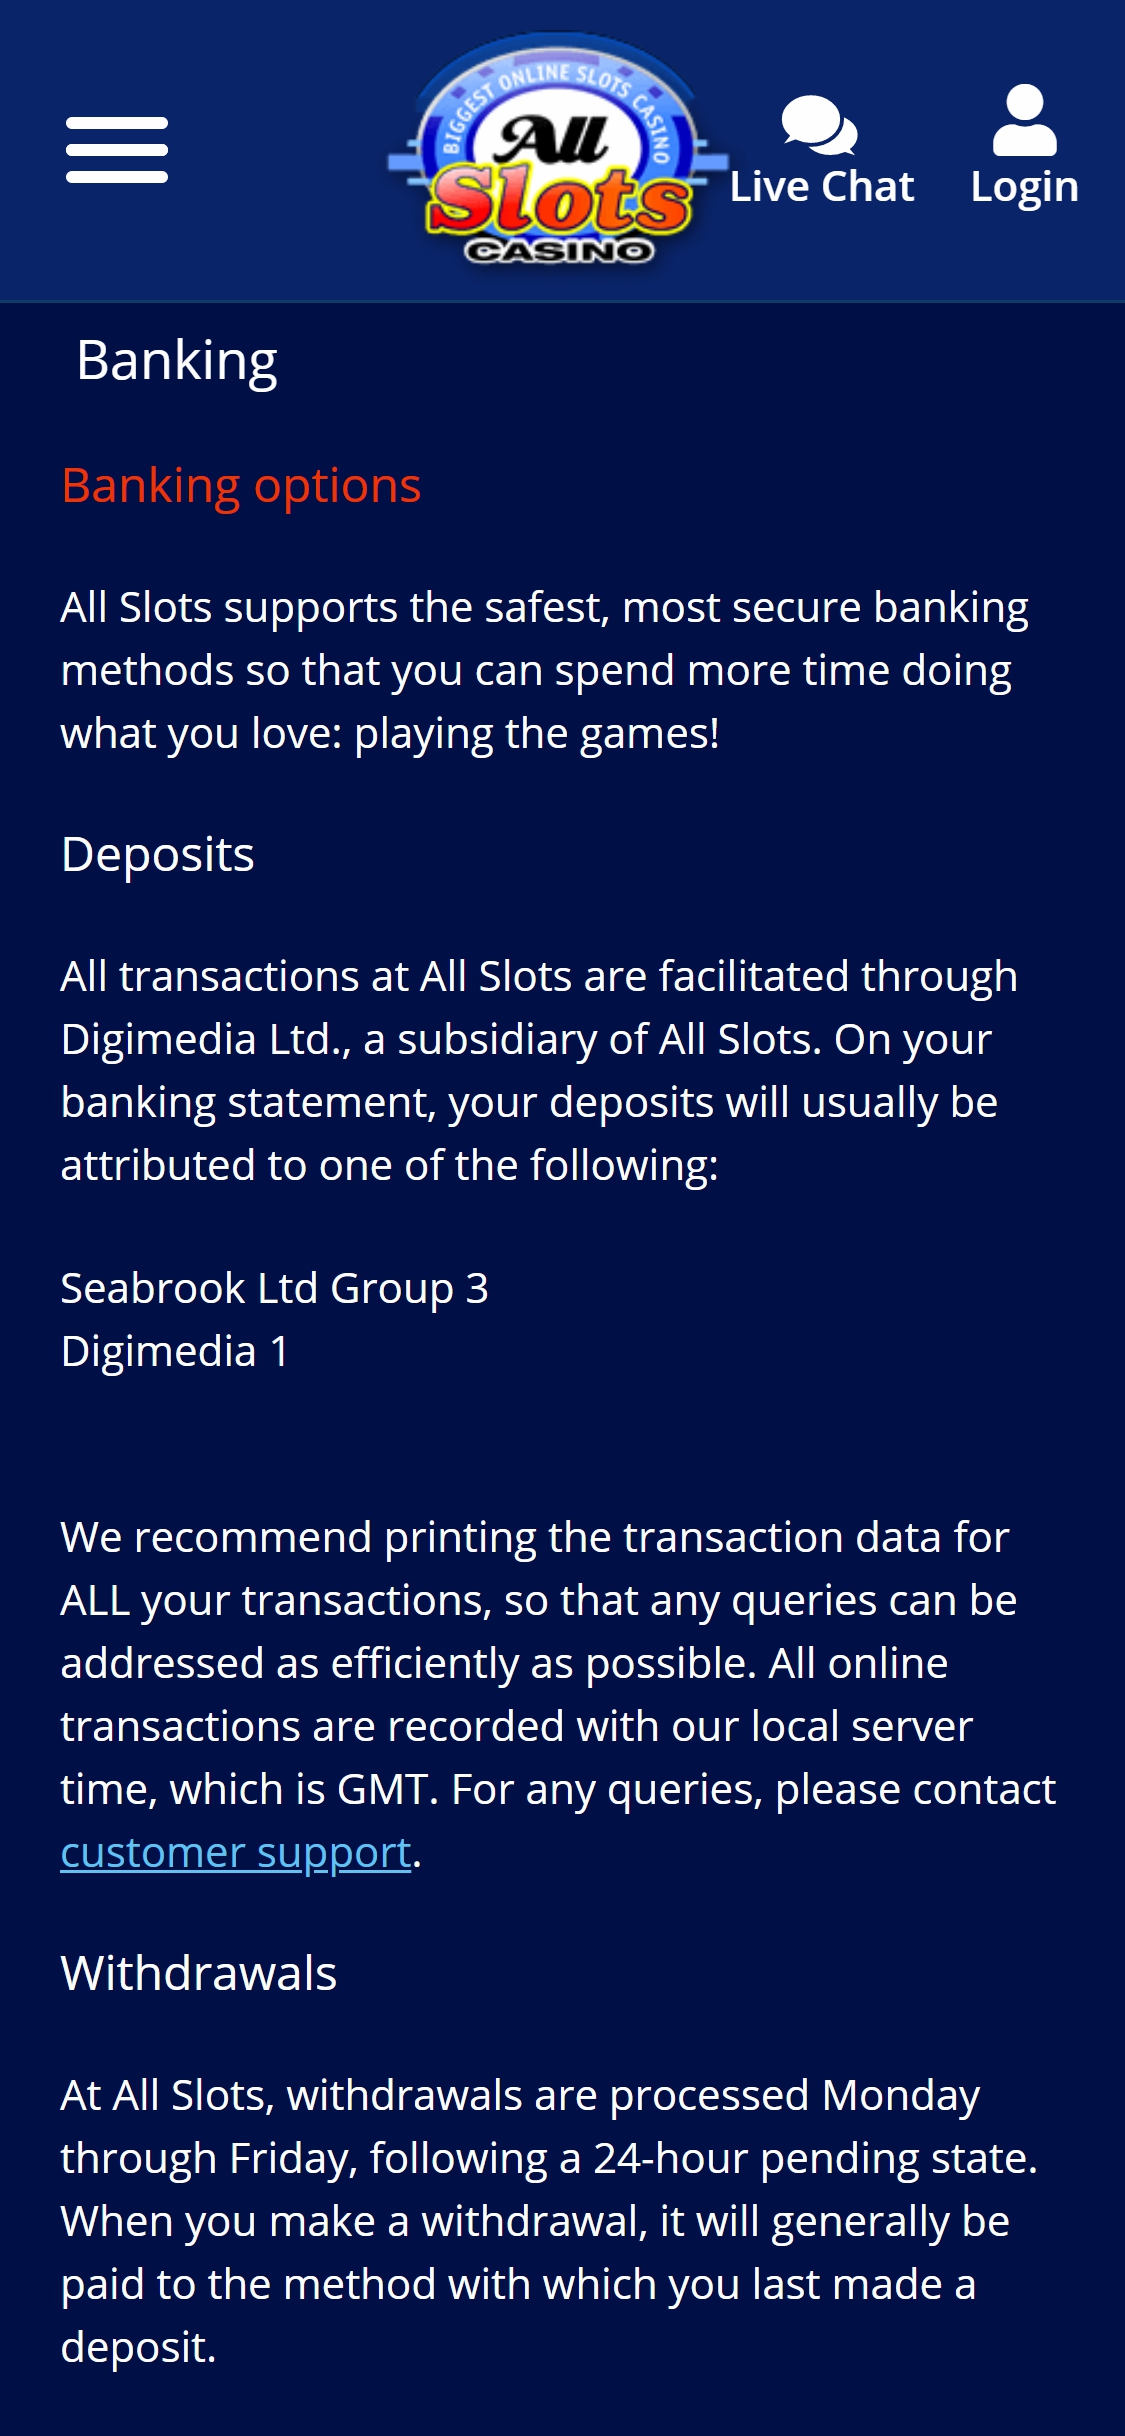 Bingo Online Casino Mobile Payment Methods Review